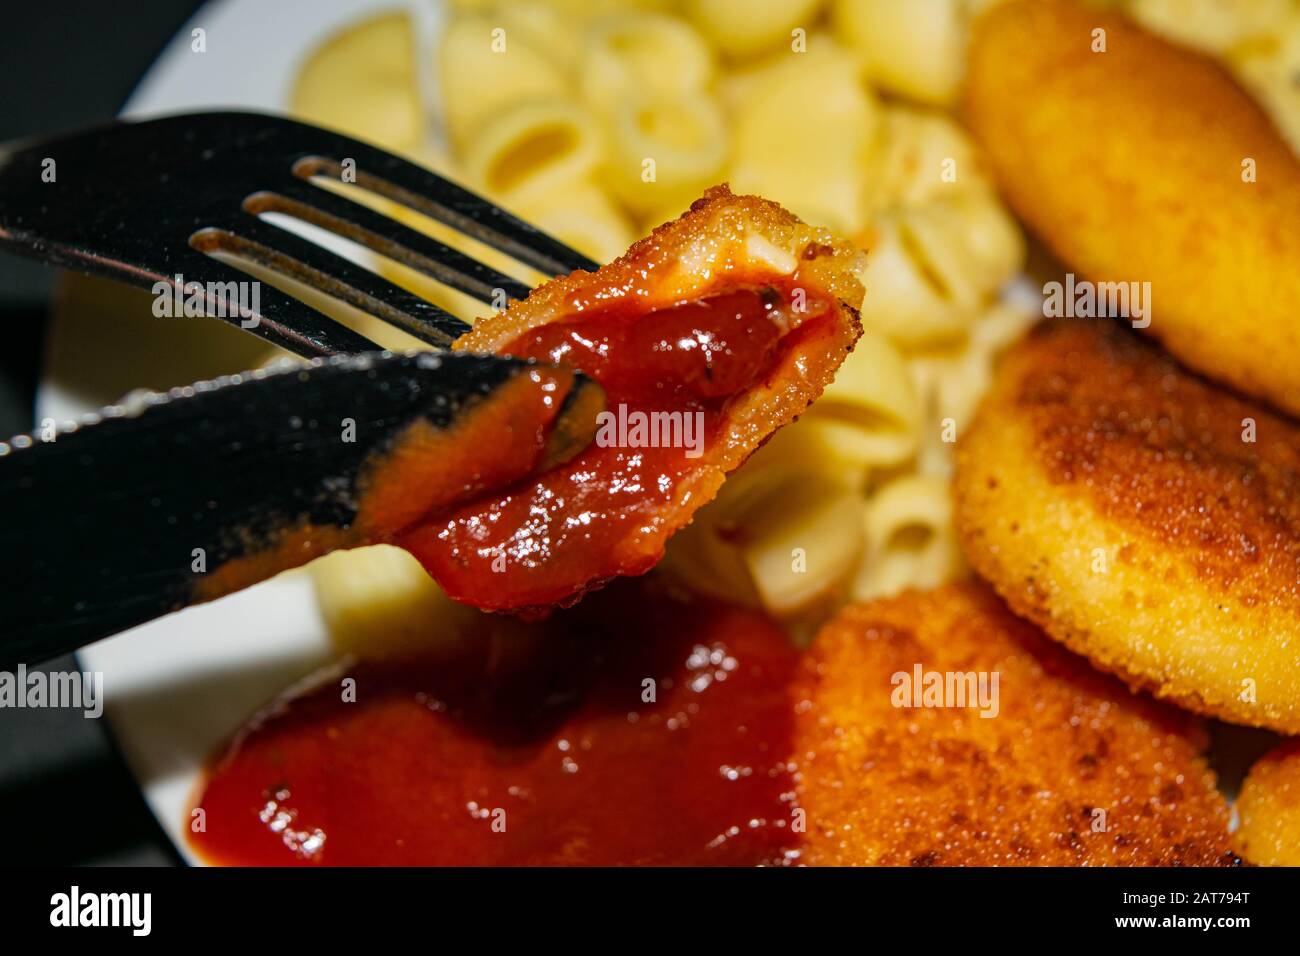 Un morceau de pépites avec ketchup sur une fourchette et une plaque blanche avec des pépites de poulet frits, des pâtes et du ketchup sur un fond sombre. Gros plan Banque D'Images